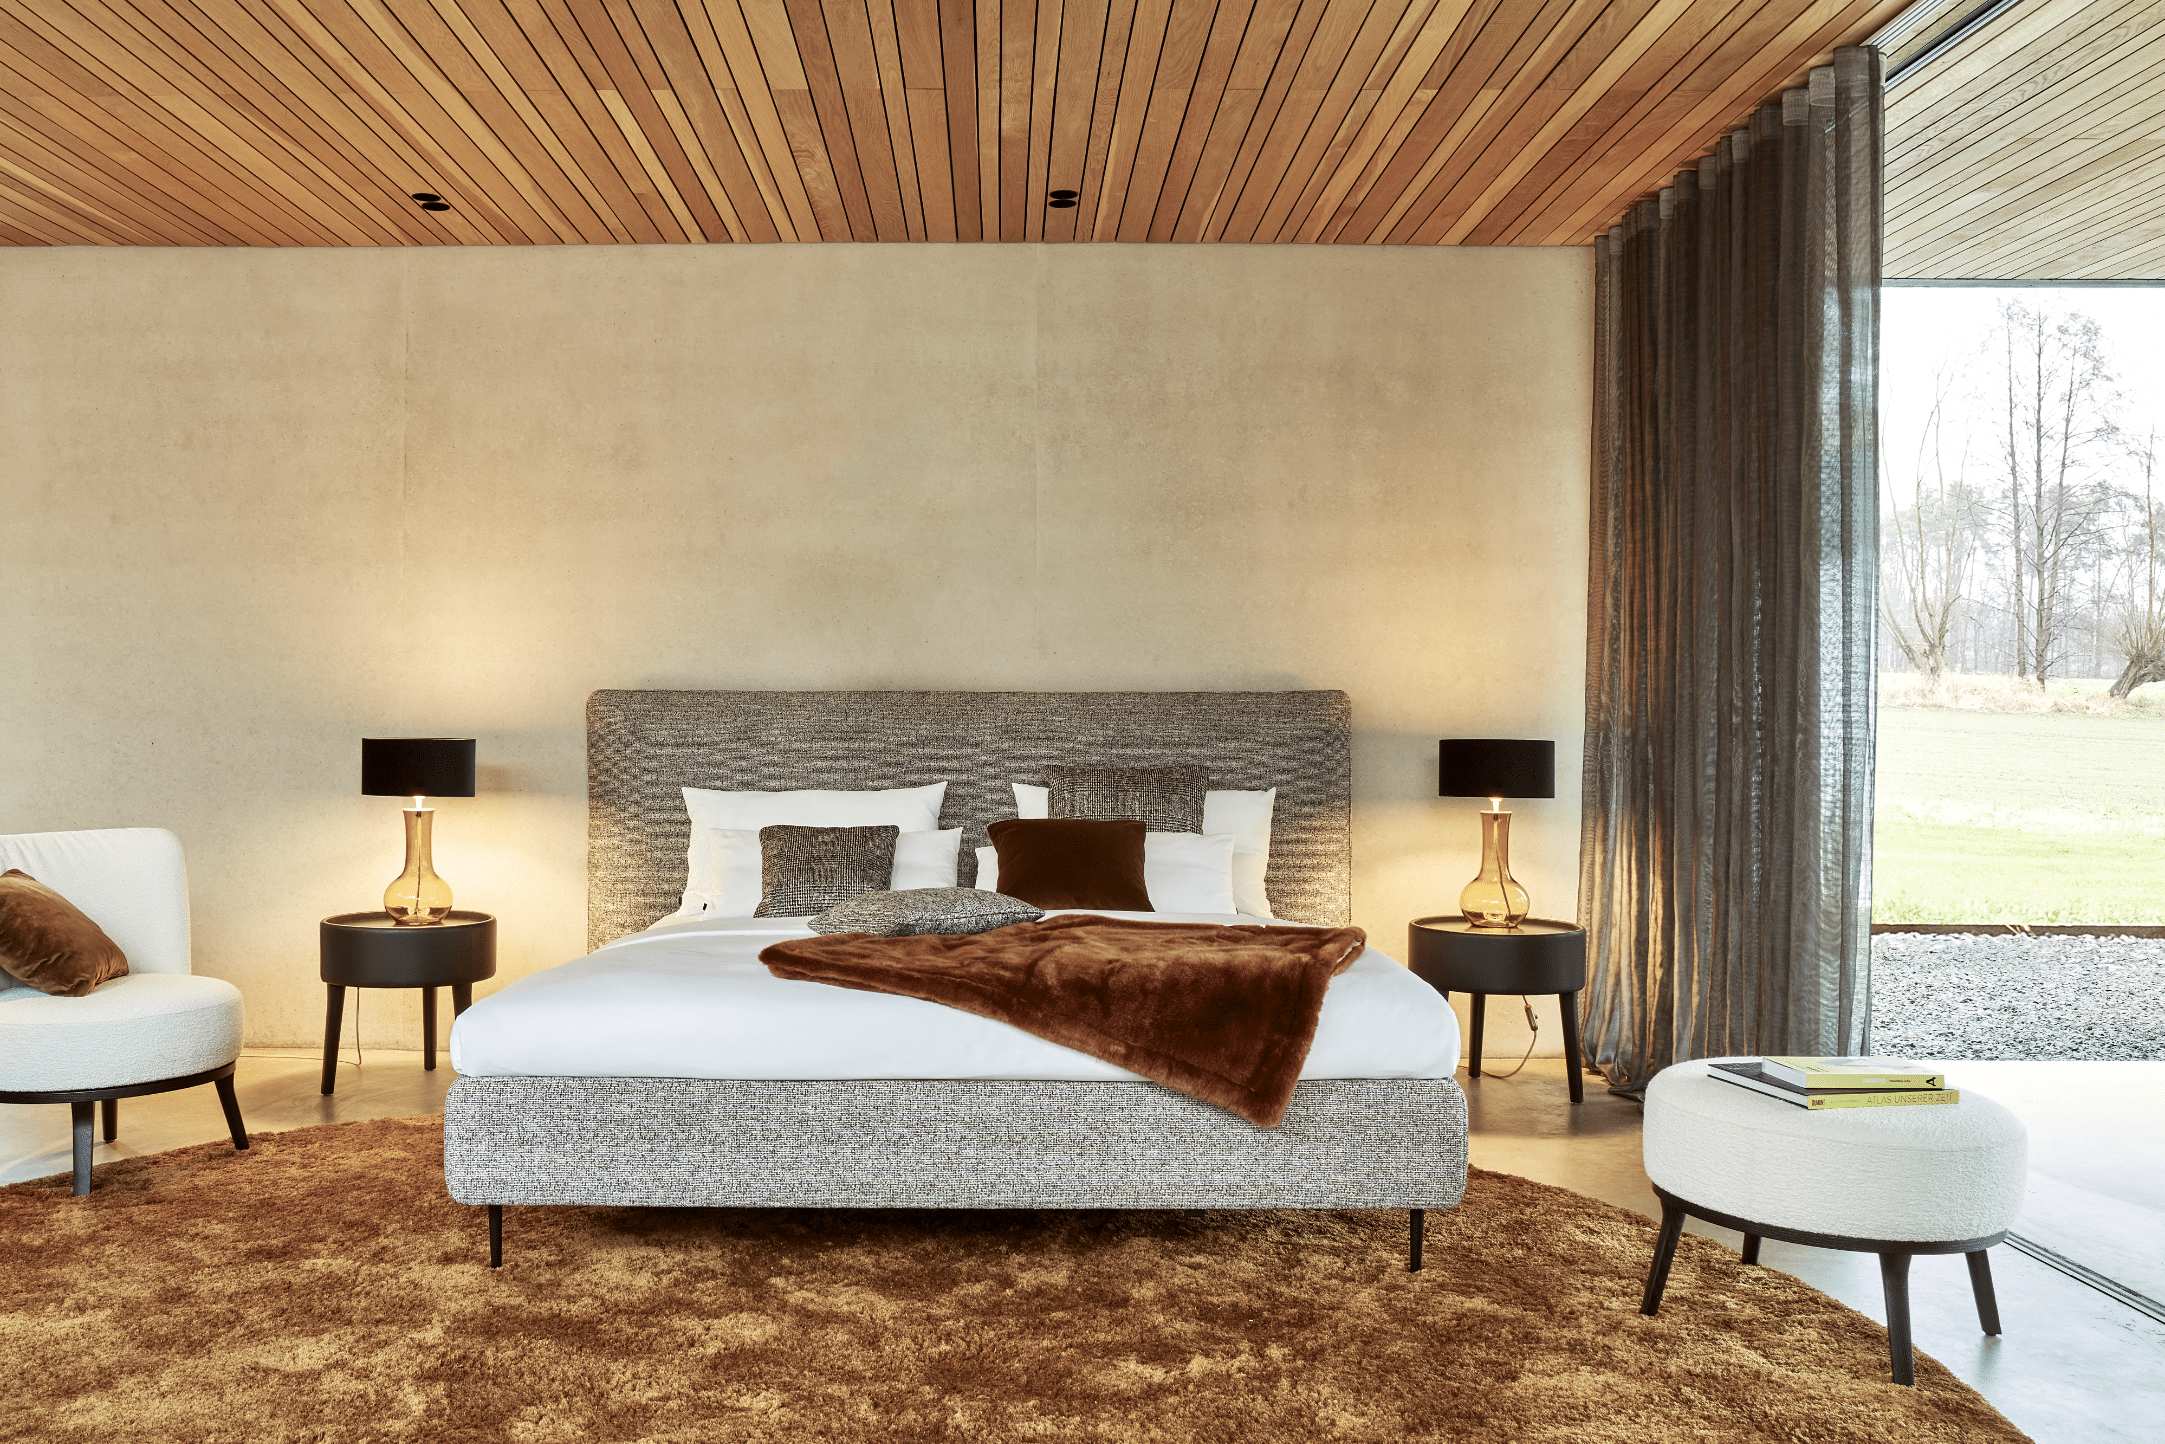 Grill & Ronacher zeigt ein modernes Schlafzimmer mit Doppelbett, schwarzen Lampen auf den Nachttischen und goldenem Rundteppich von Bielefelder Werkstätten.